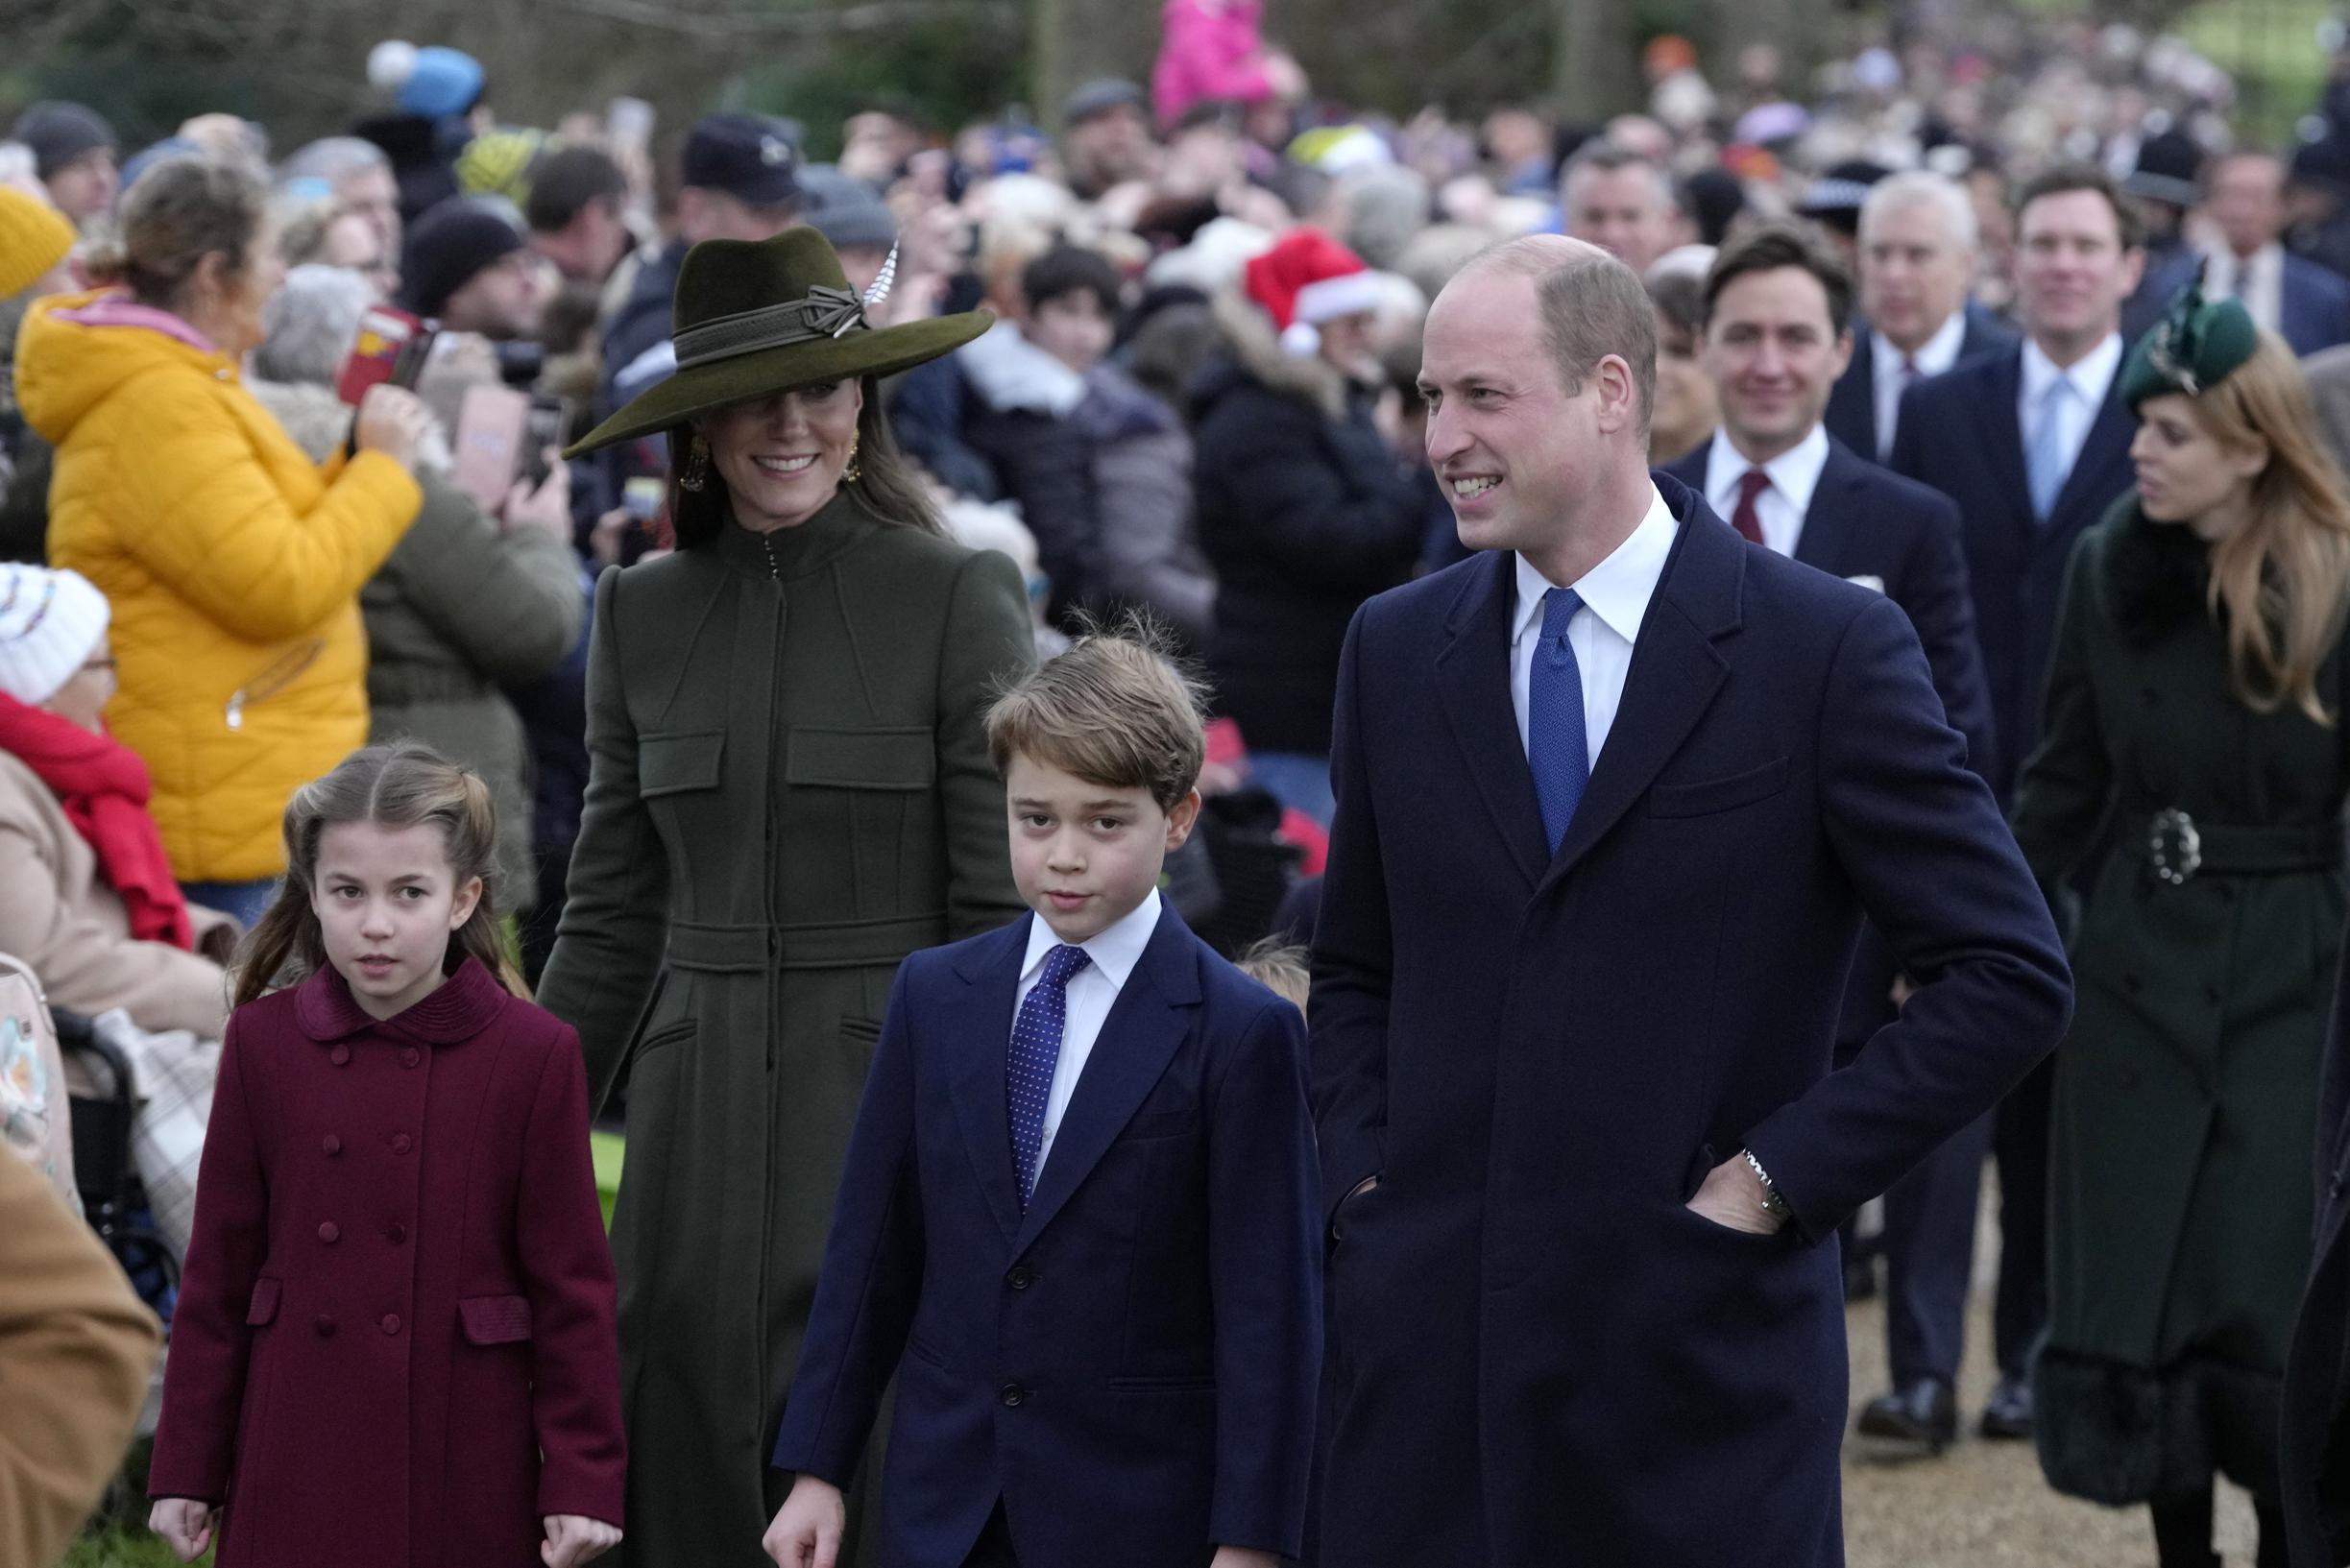 Primo Natale senza la Regina, ma la famiglia reale britannica è straordinariamente unita anche con il principe Andrea a pranzo: ‘Non è un caso’